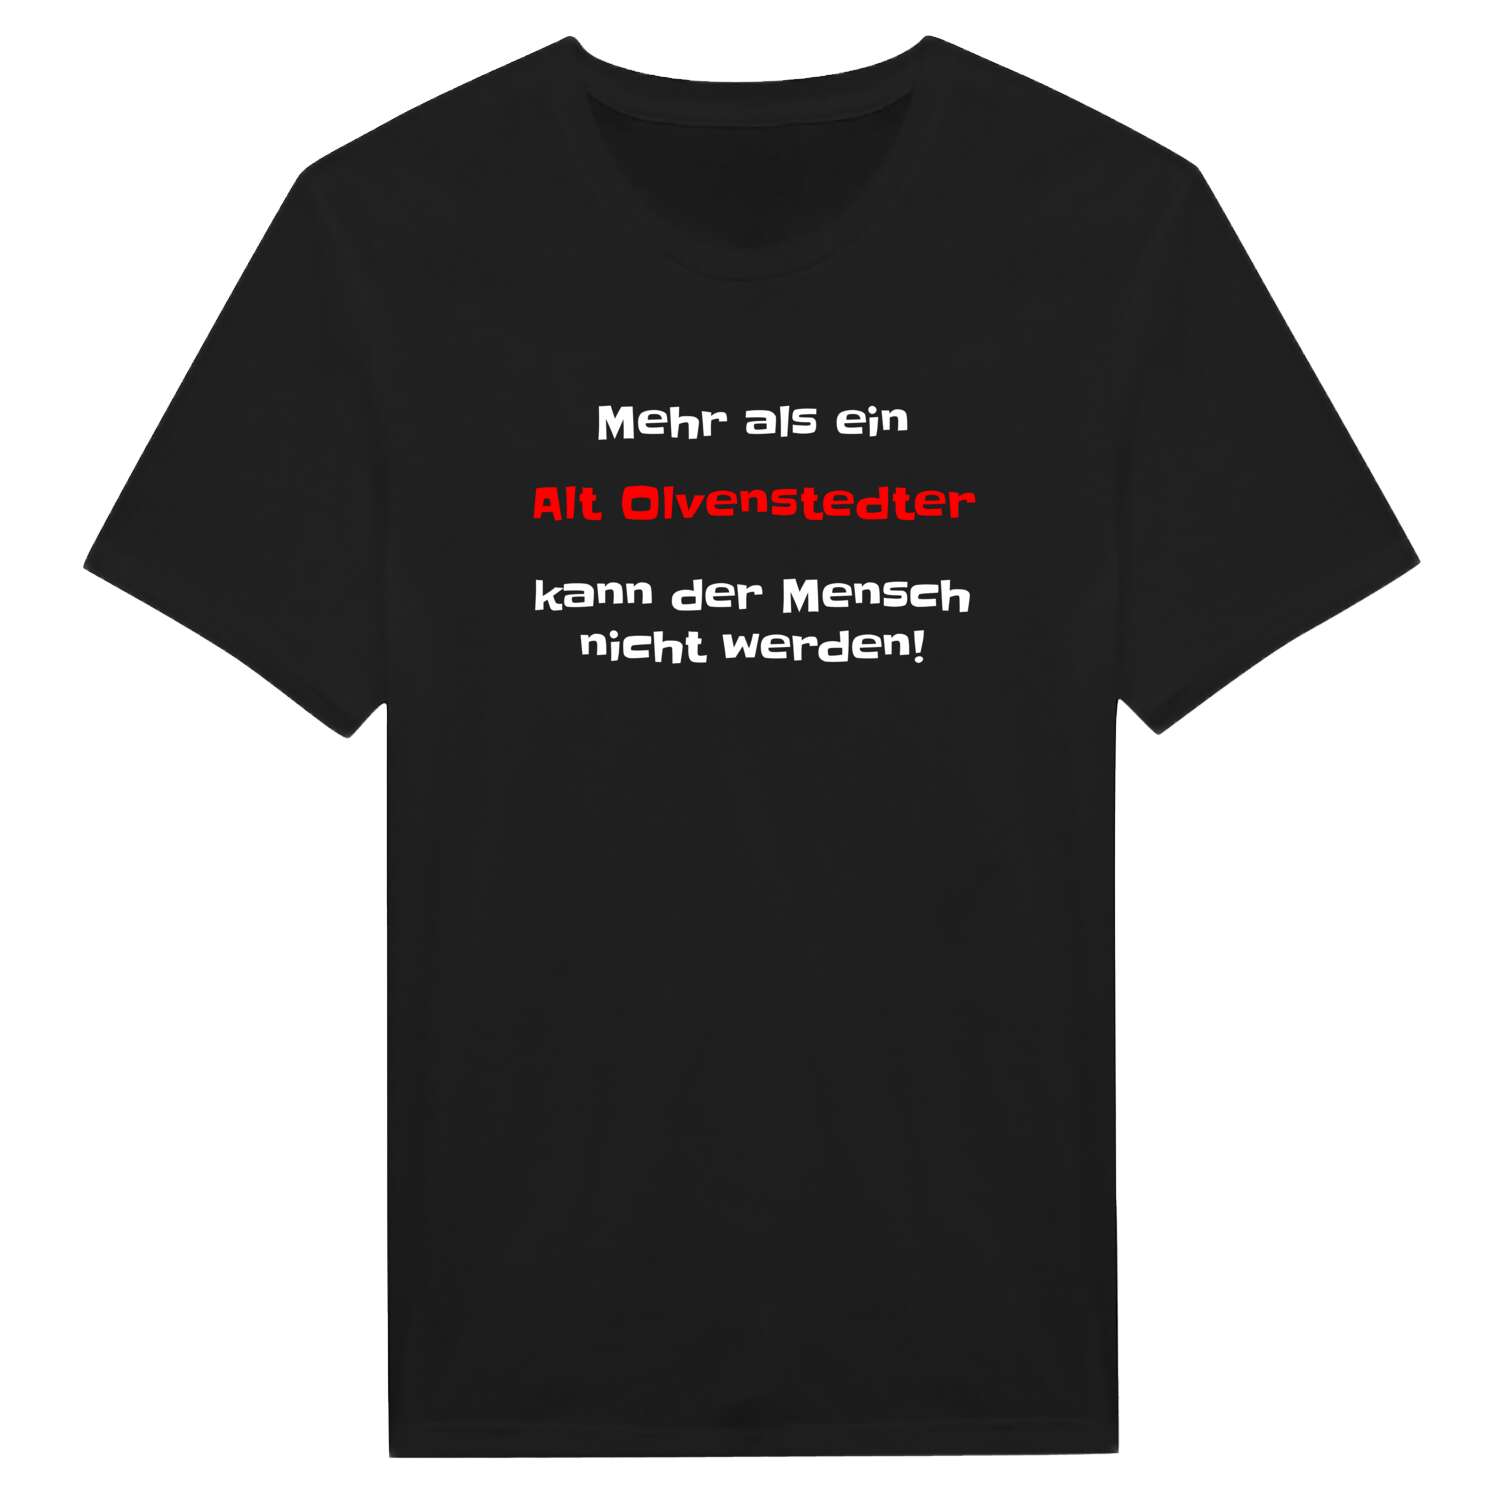 Alt Olvenstedt T-Shirt »Mehr als ein«